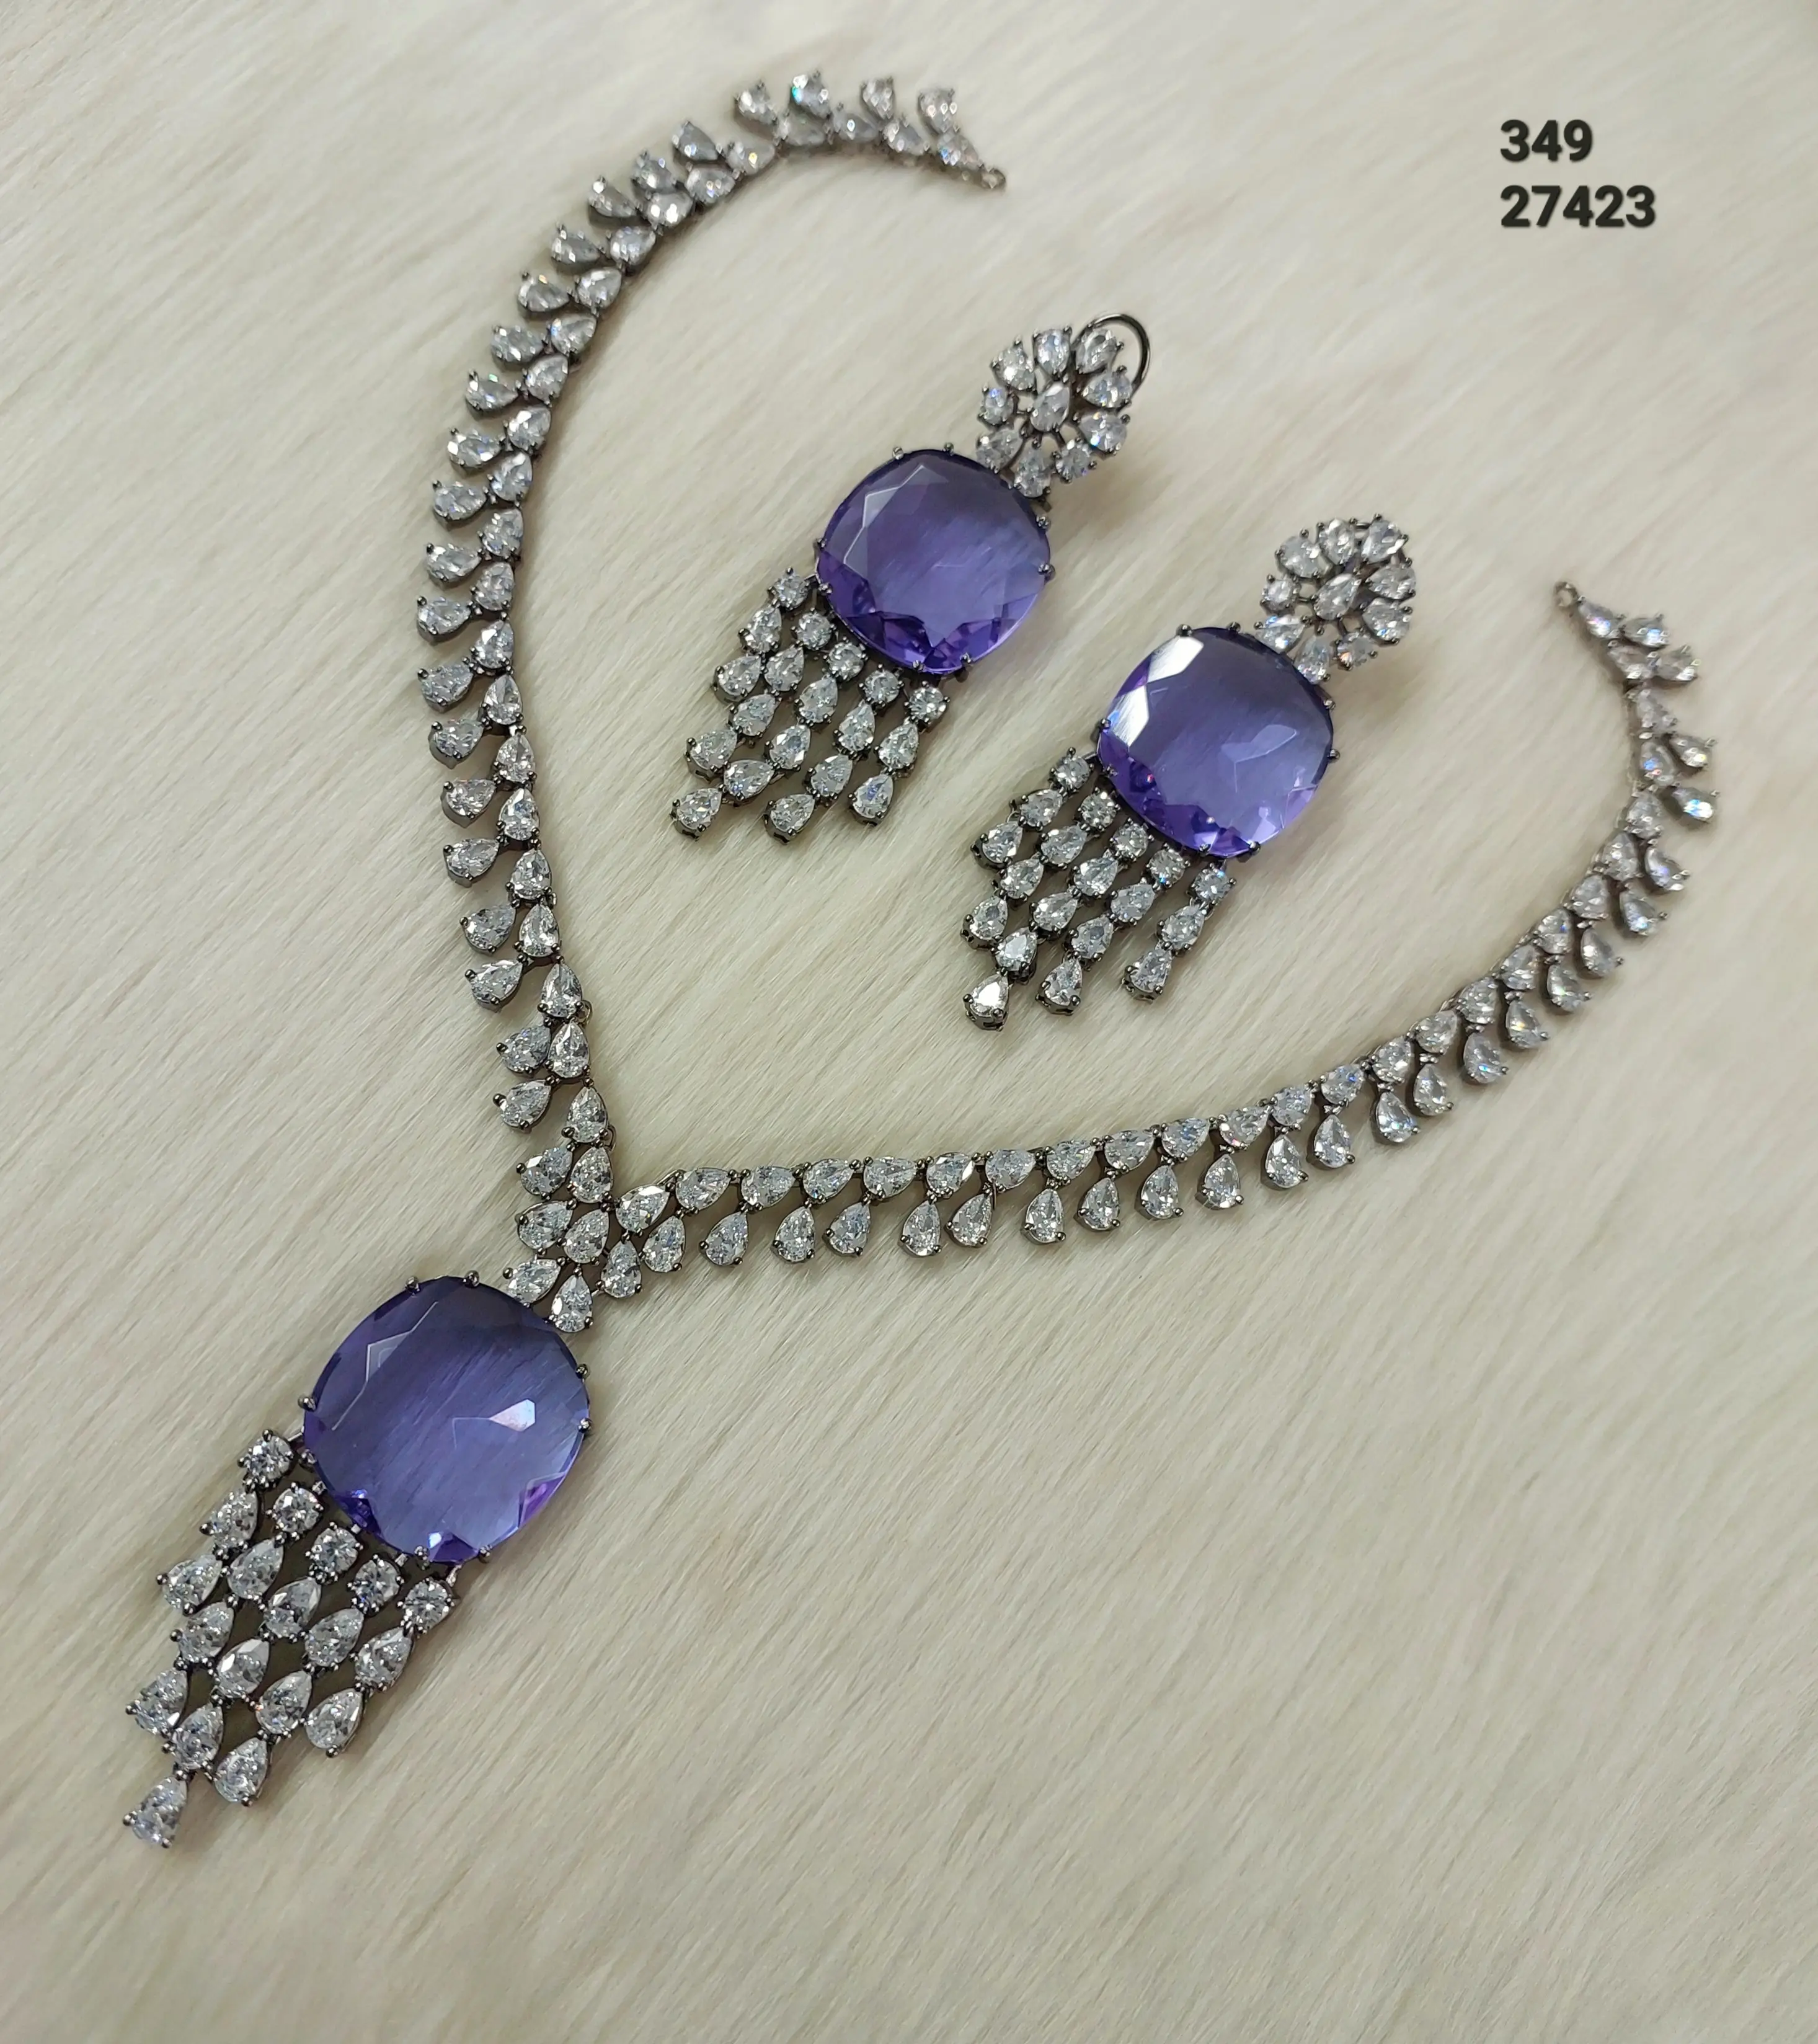 Купить модное рекламное ожерелье с классическим и высококачественным материалом, сделанный для продажи индийскими экспортерами